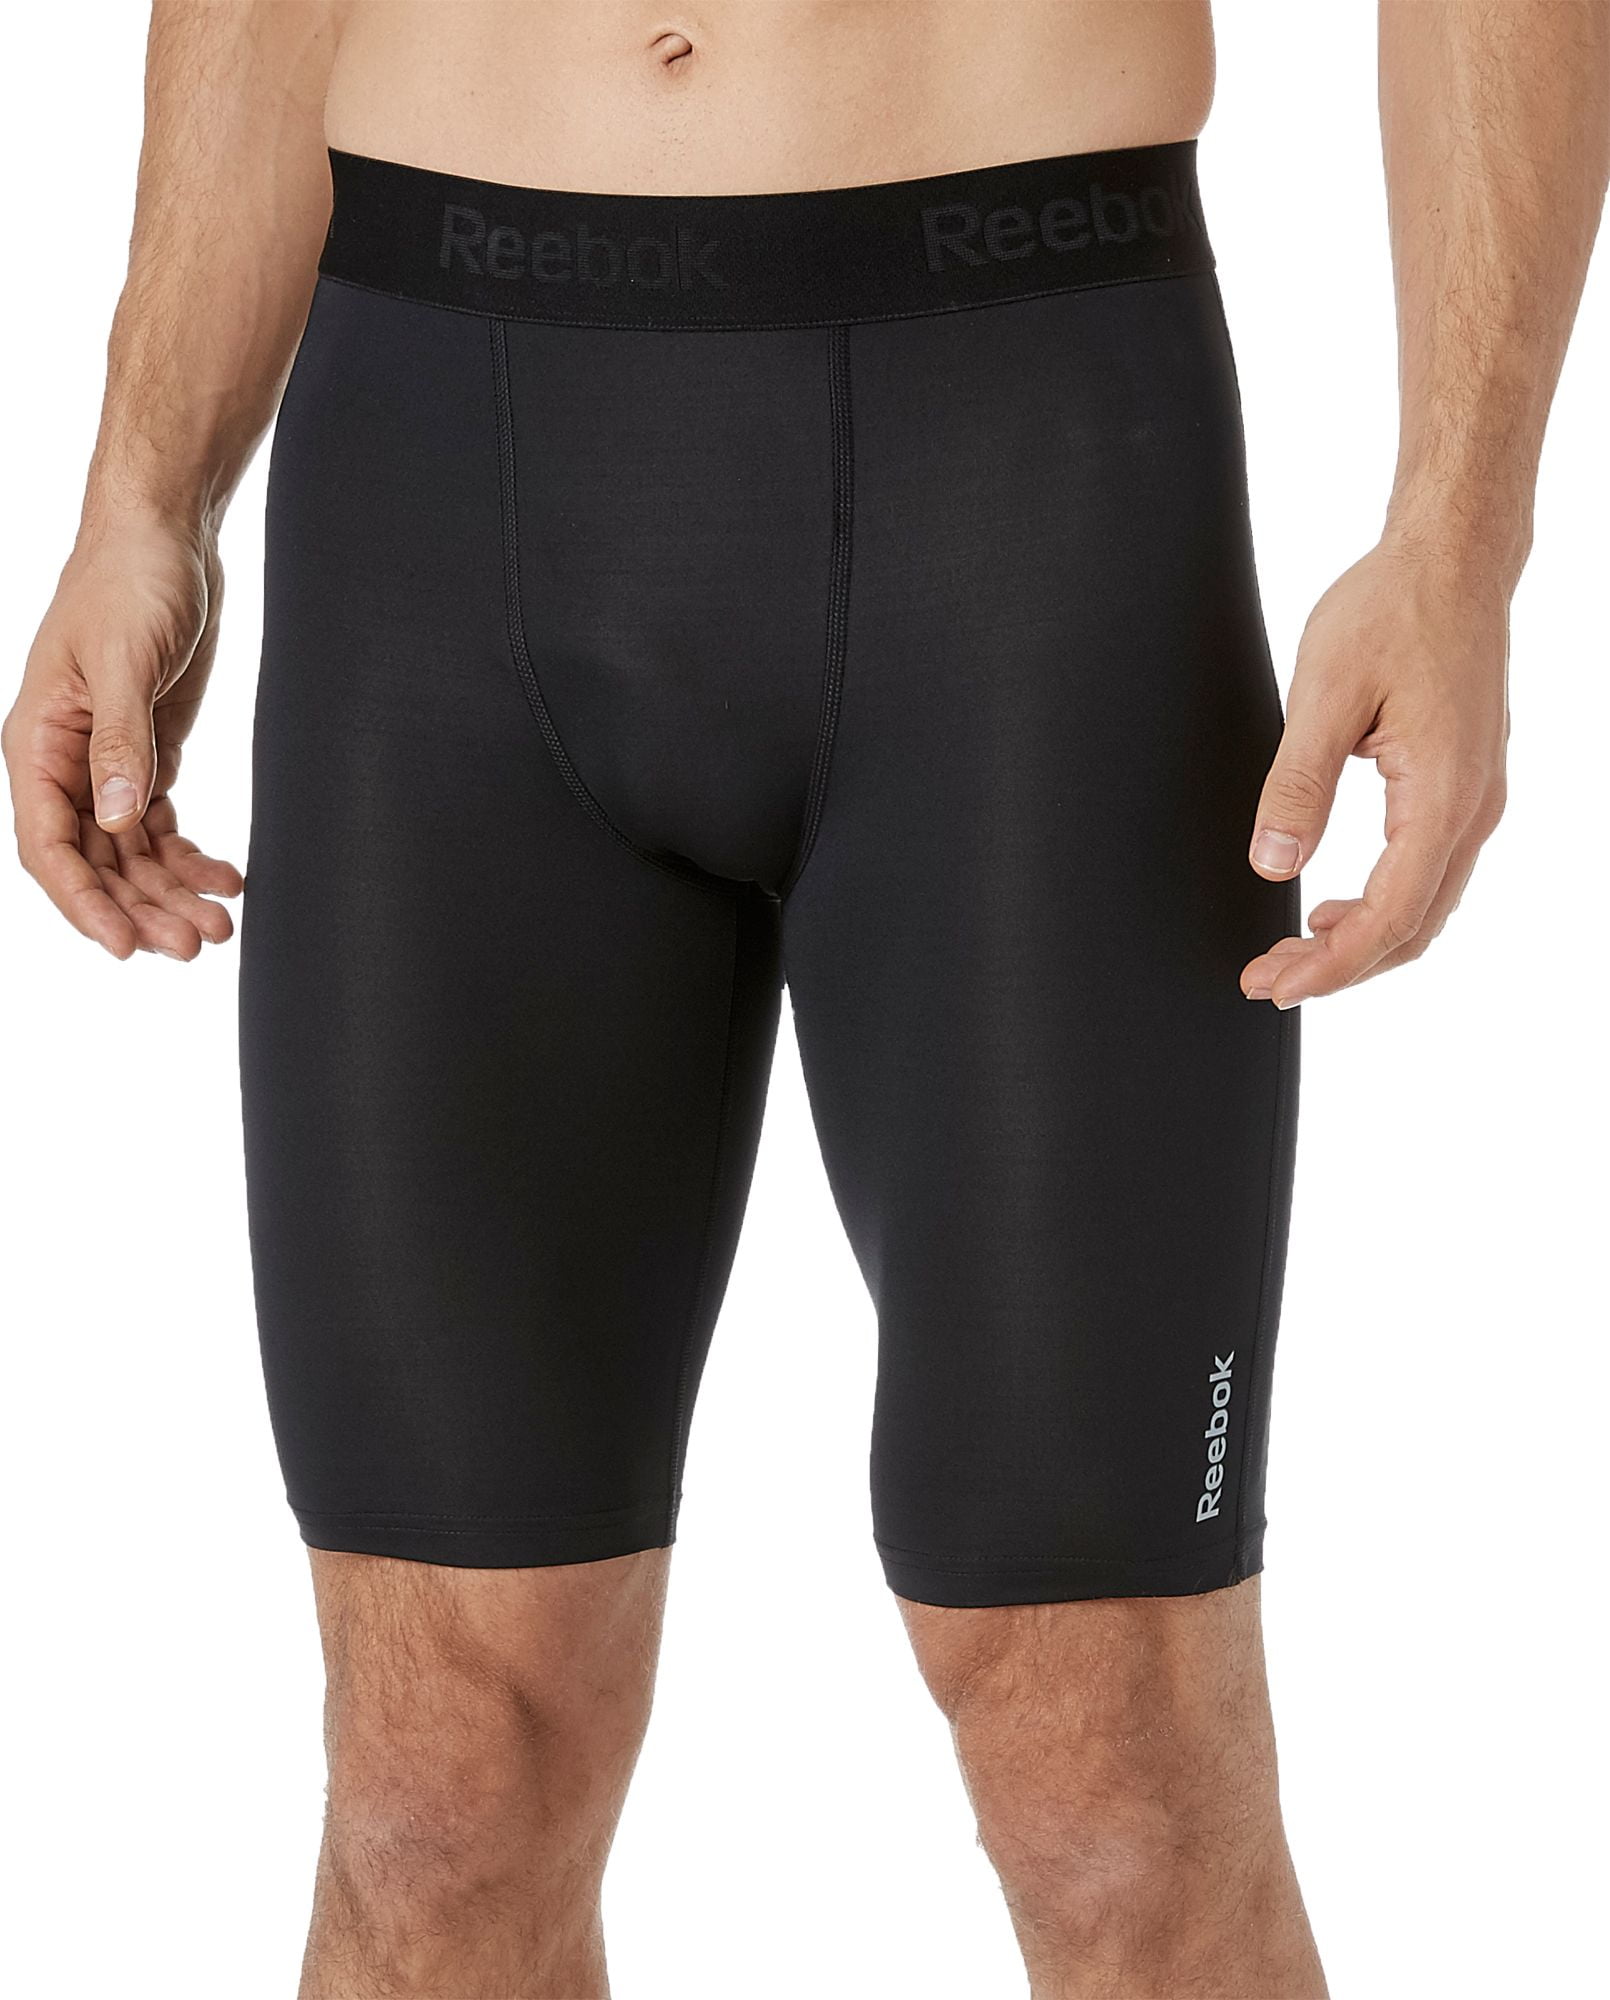 reebok mens compression shorts